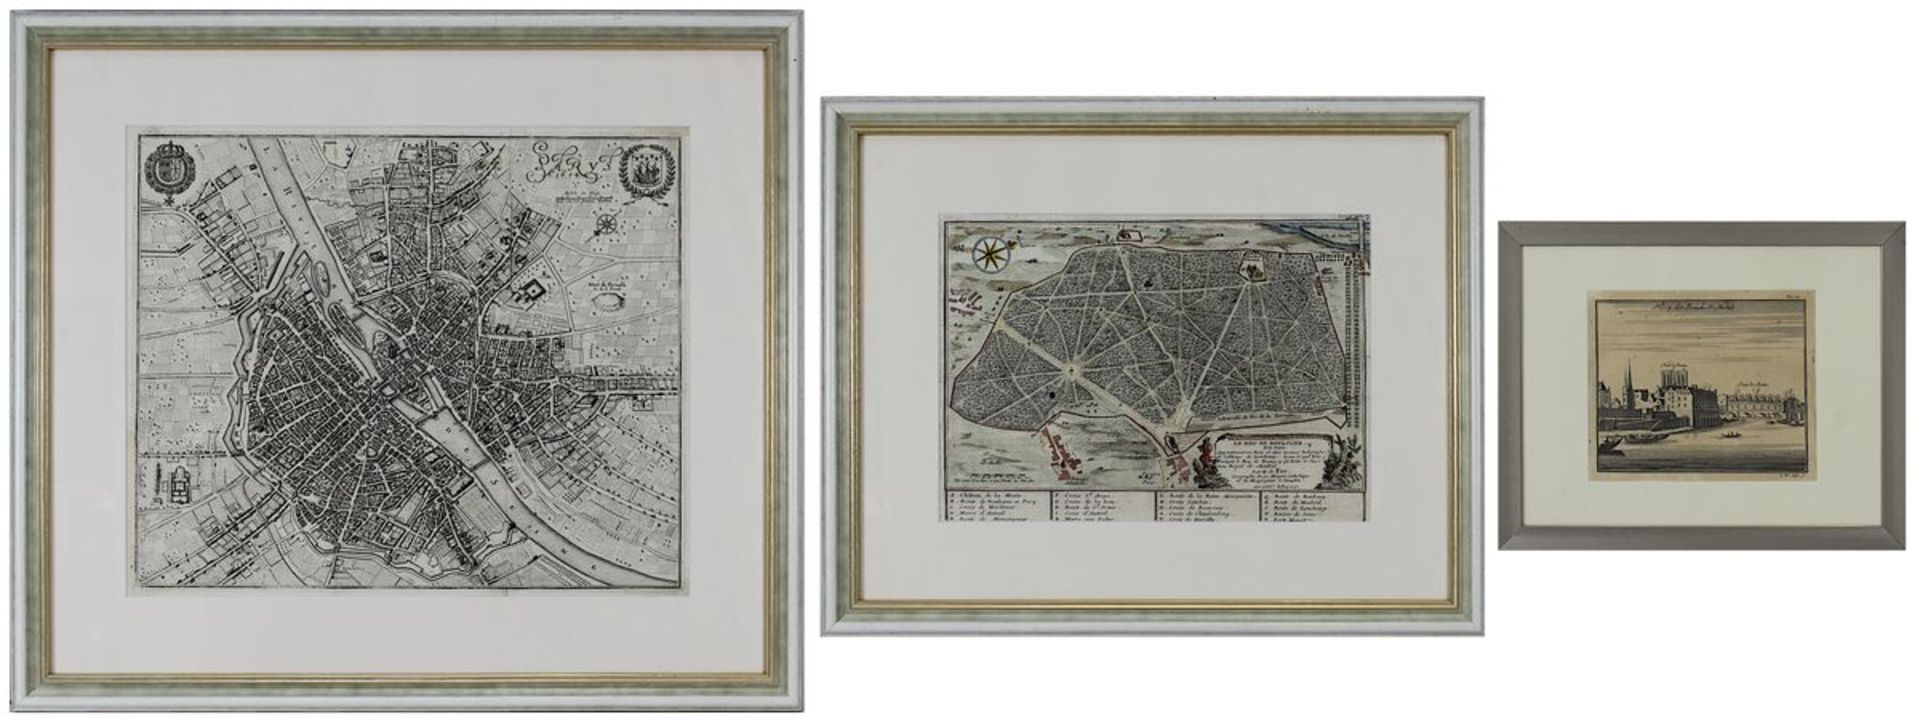 Drei Stiche mit Parisansichten, 17./ 18. Jh.: Paris aus der Vogelschau, Kupferstich von M. Merian (